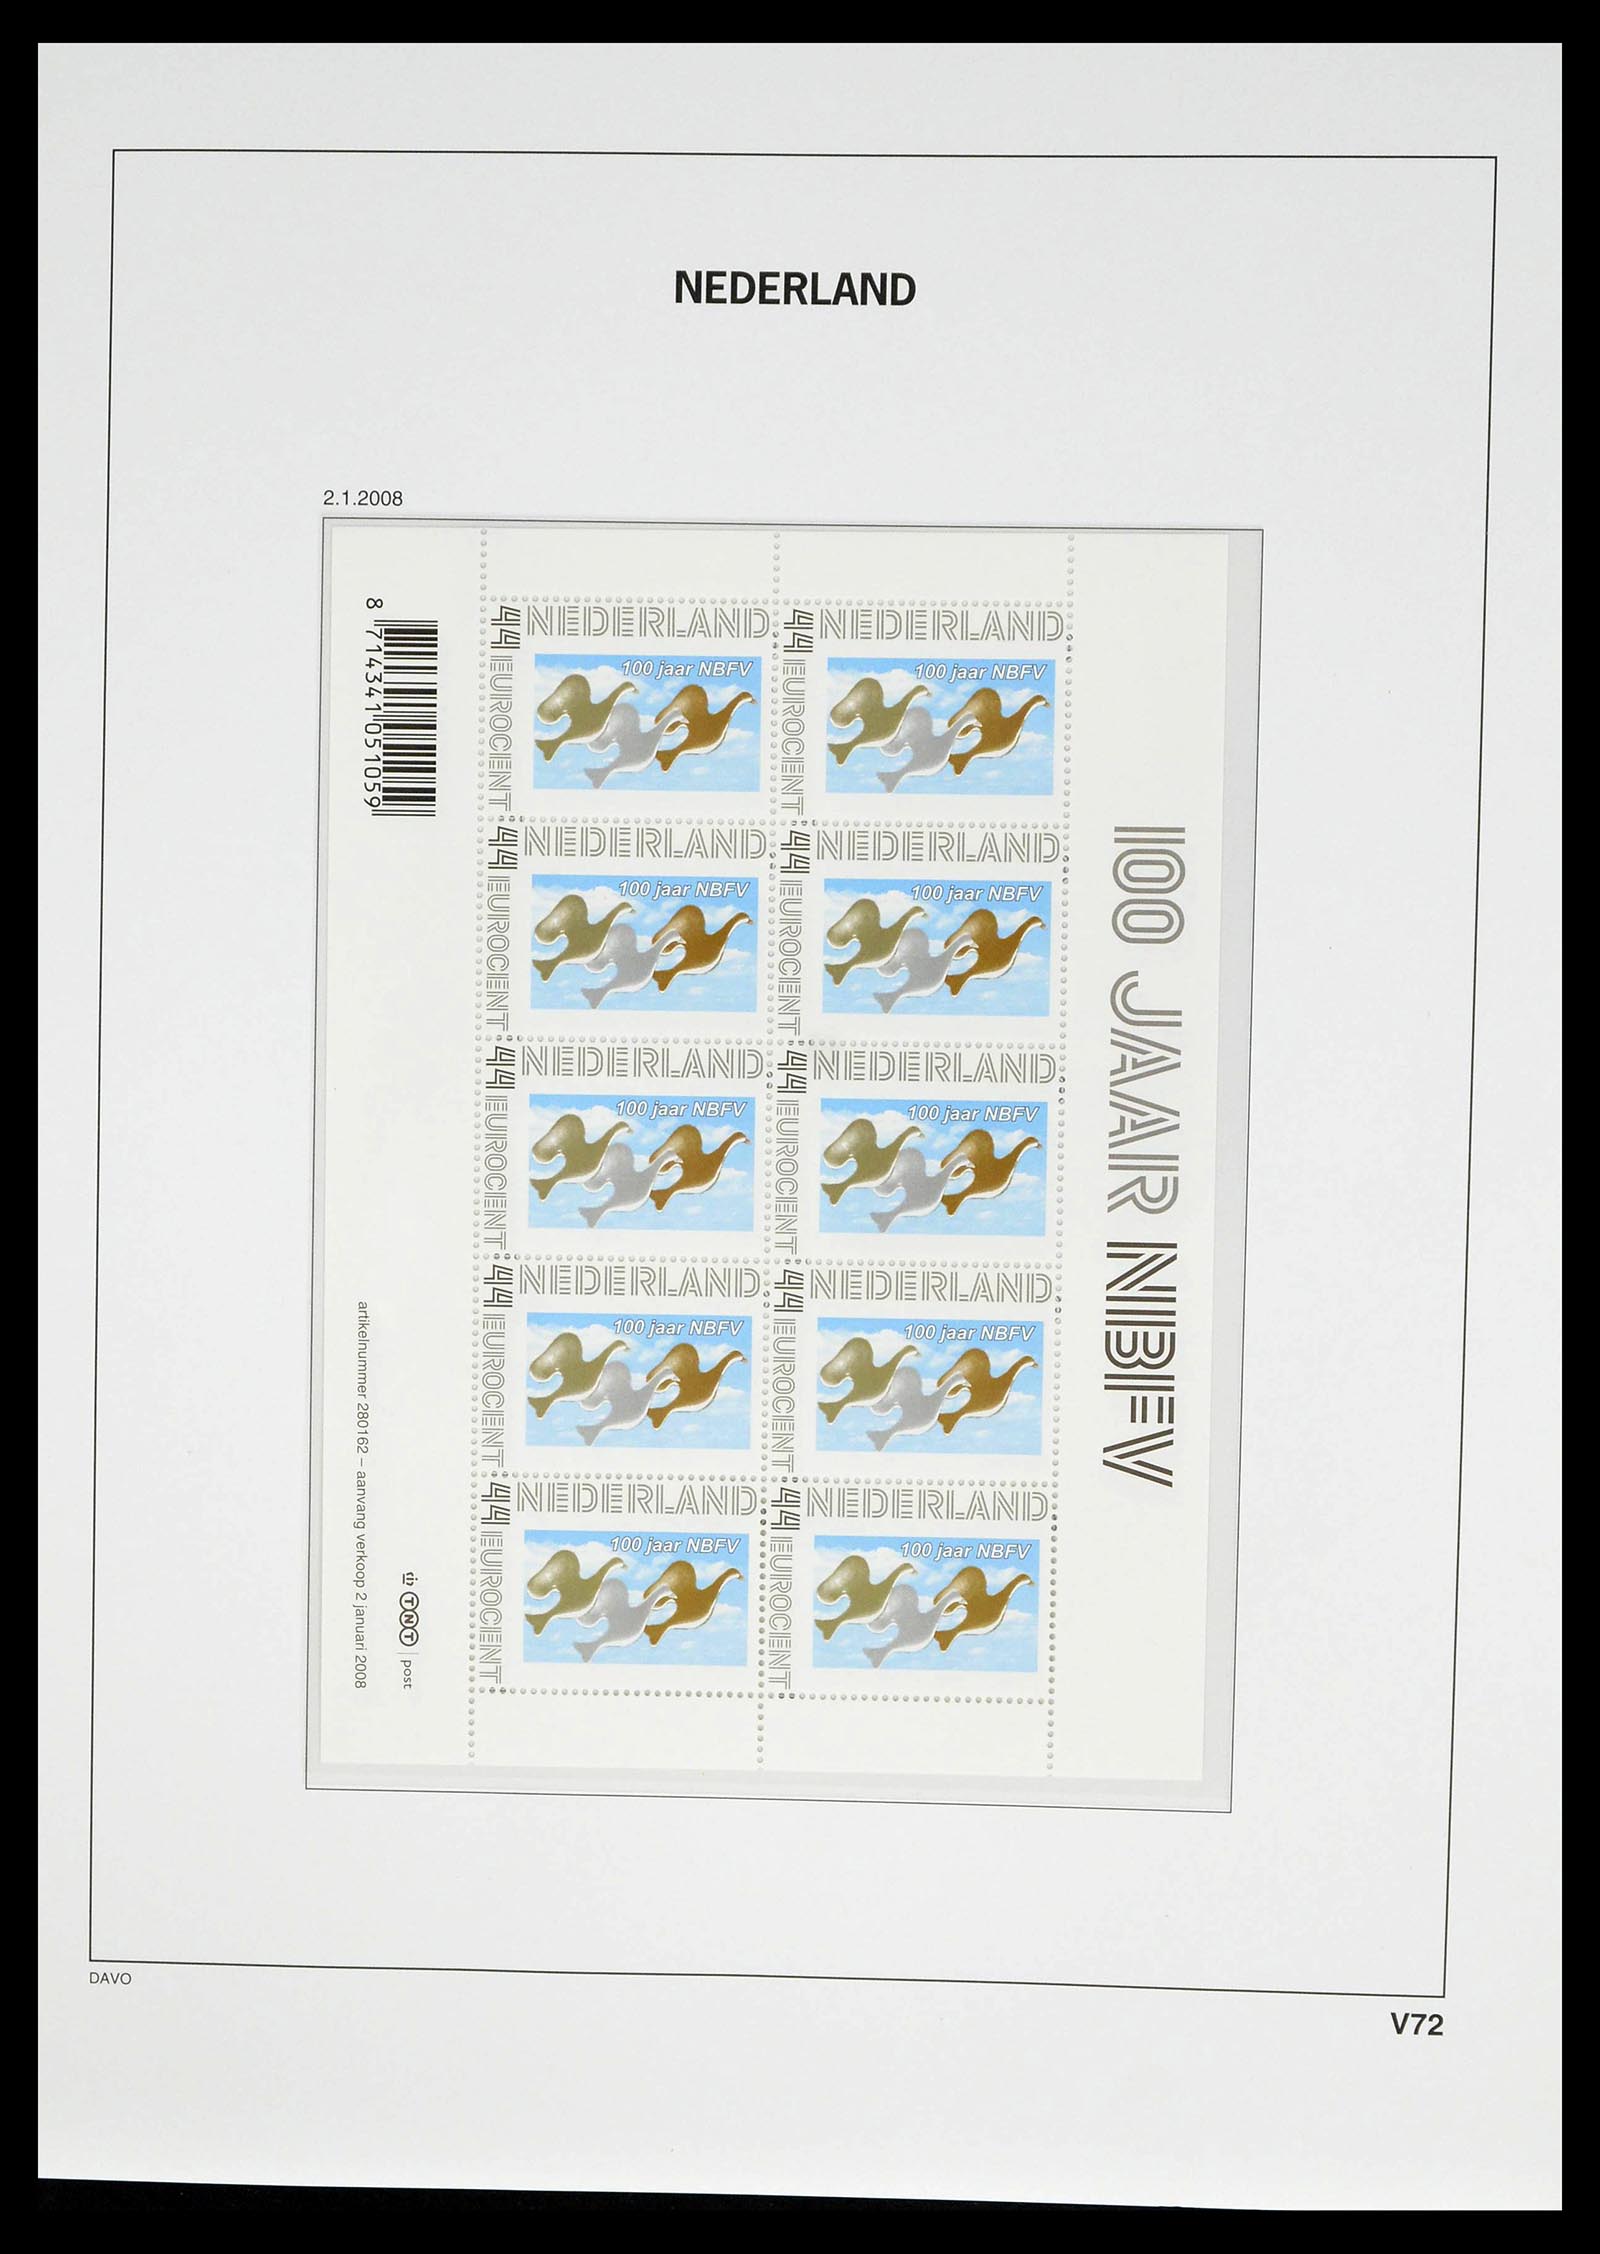 39134 0086 - Stamp collection 39134 Netherlands sheetlets 1992-2019!